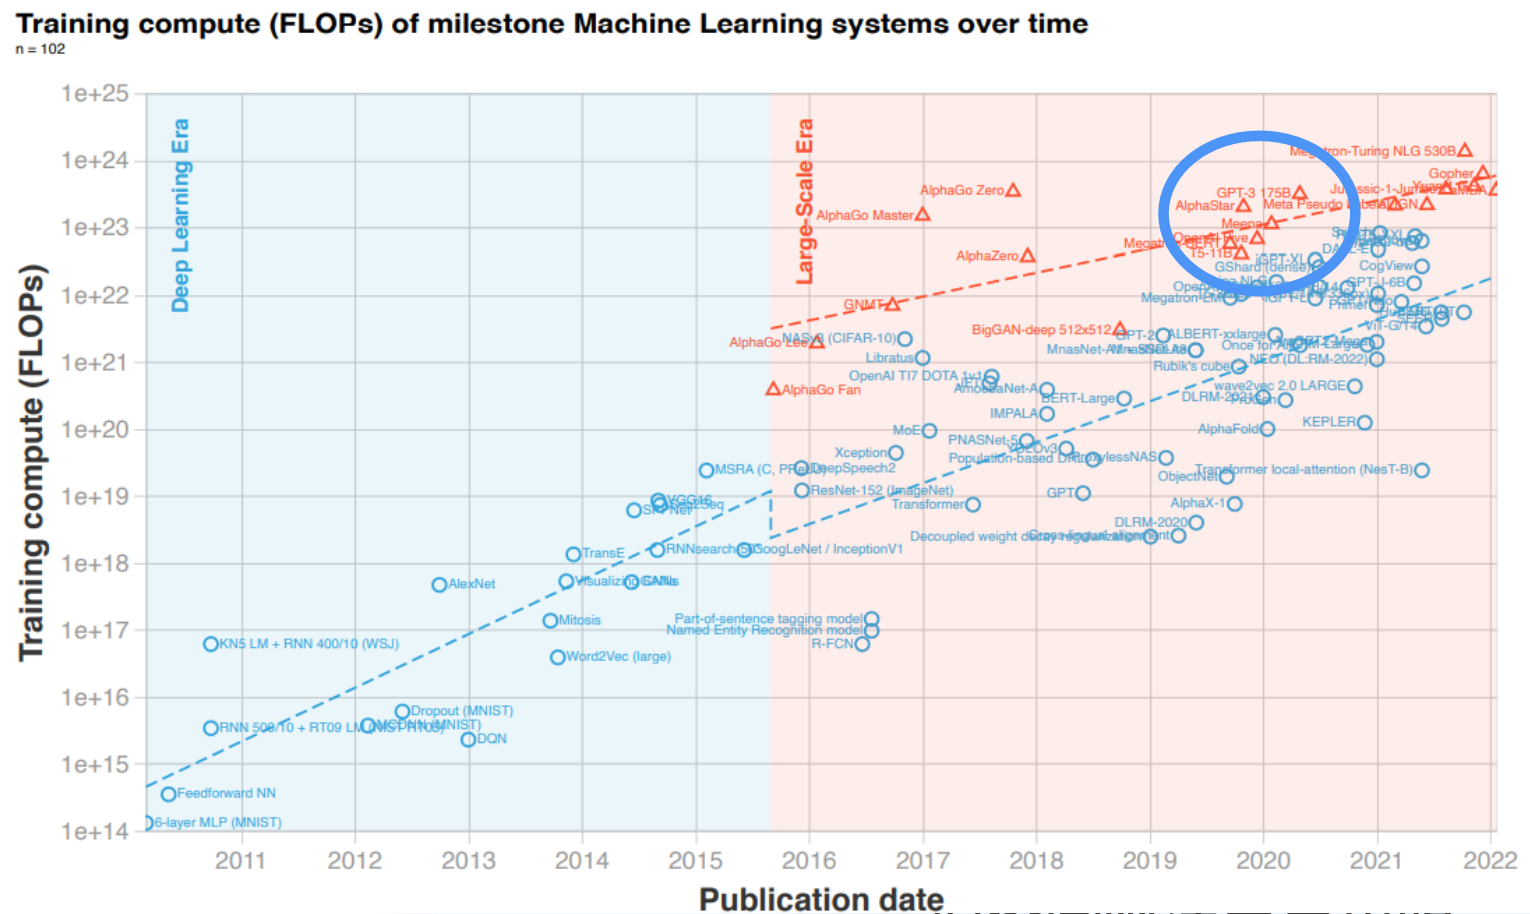 2010年至2022年间102个里程碑ML系统的训练计算趋势如所示